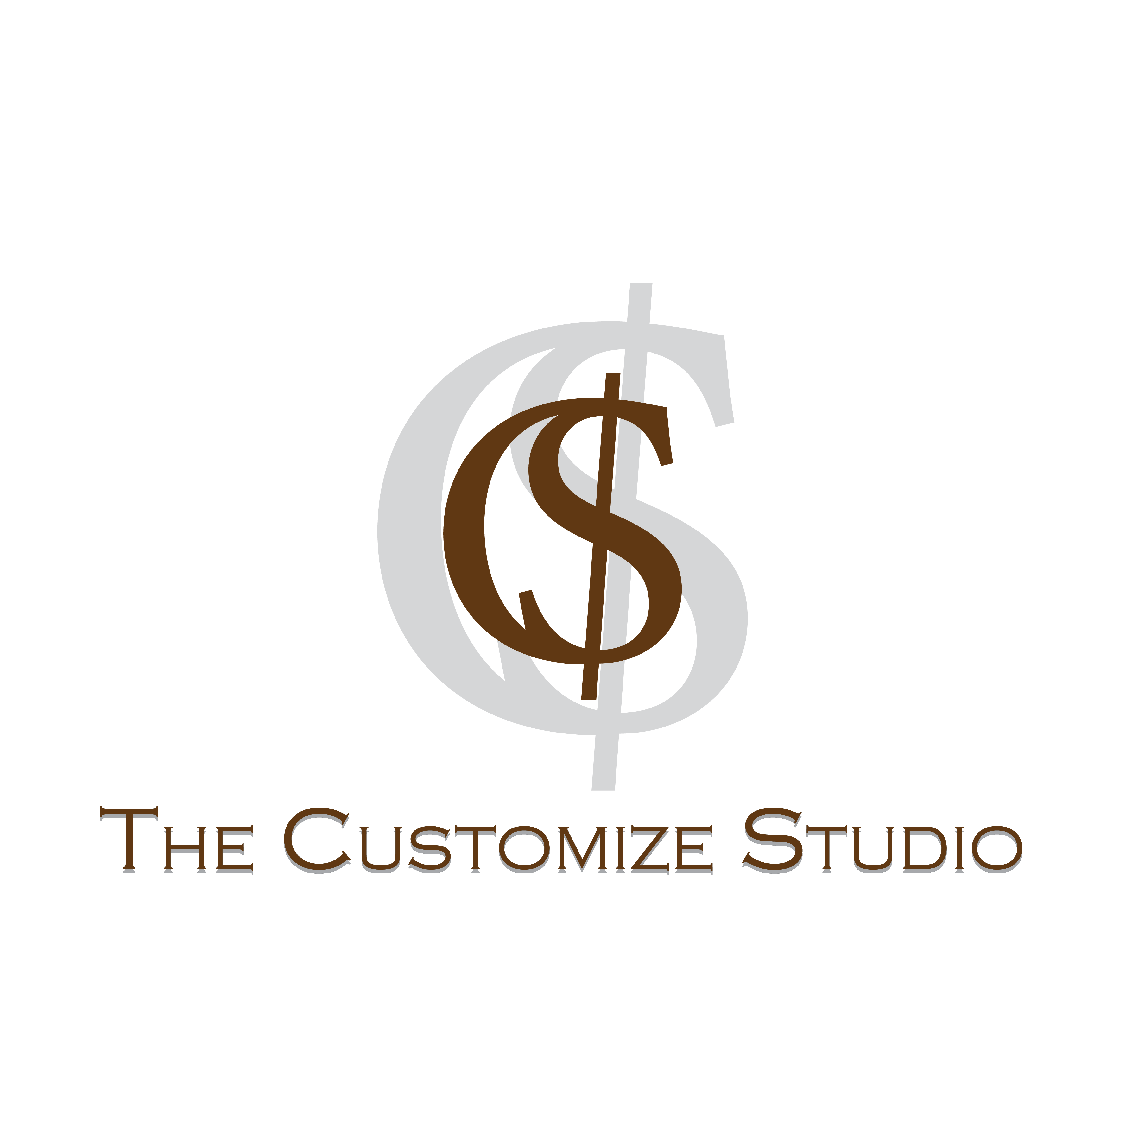 The Customize Studio